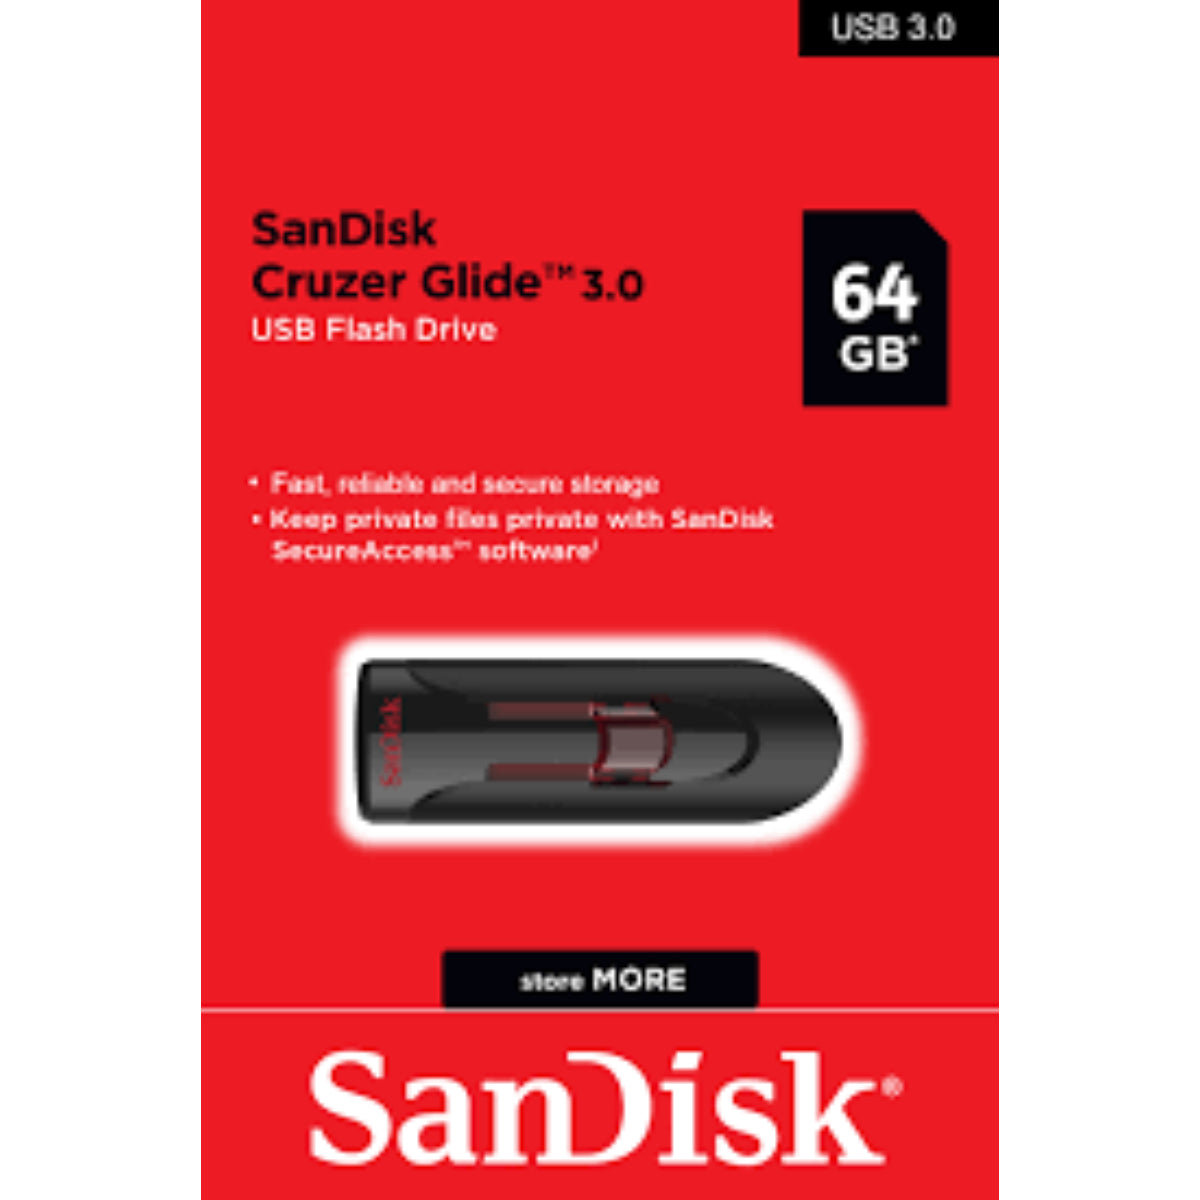 זיכרון-נייד-sandisk-cruzer-glide-3-0-usb-flash-drive-z600-64gb